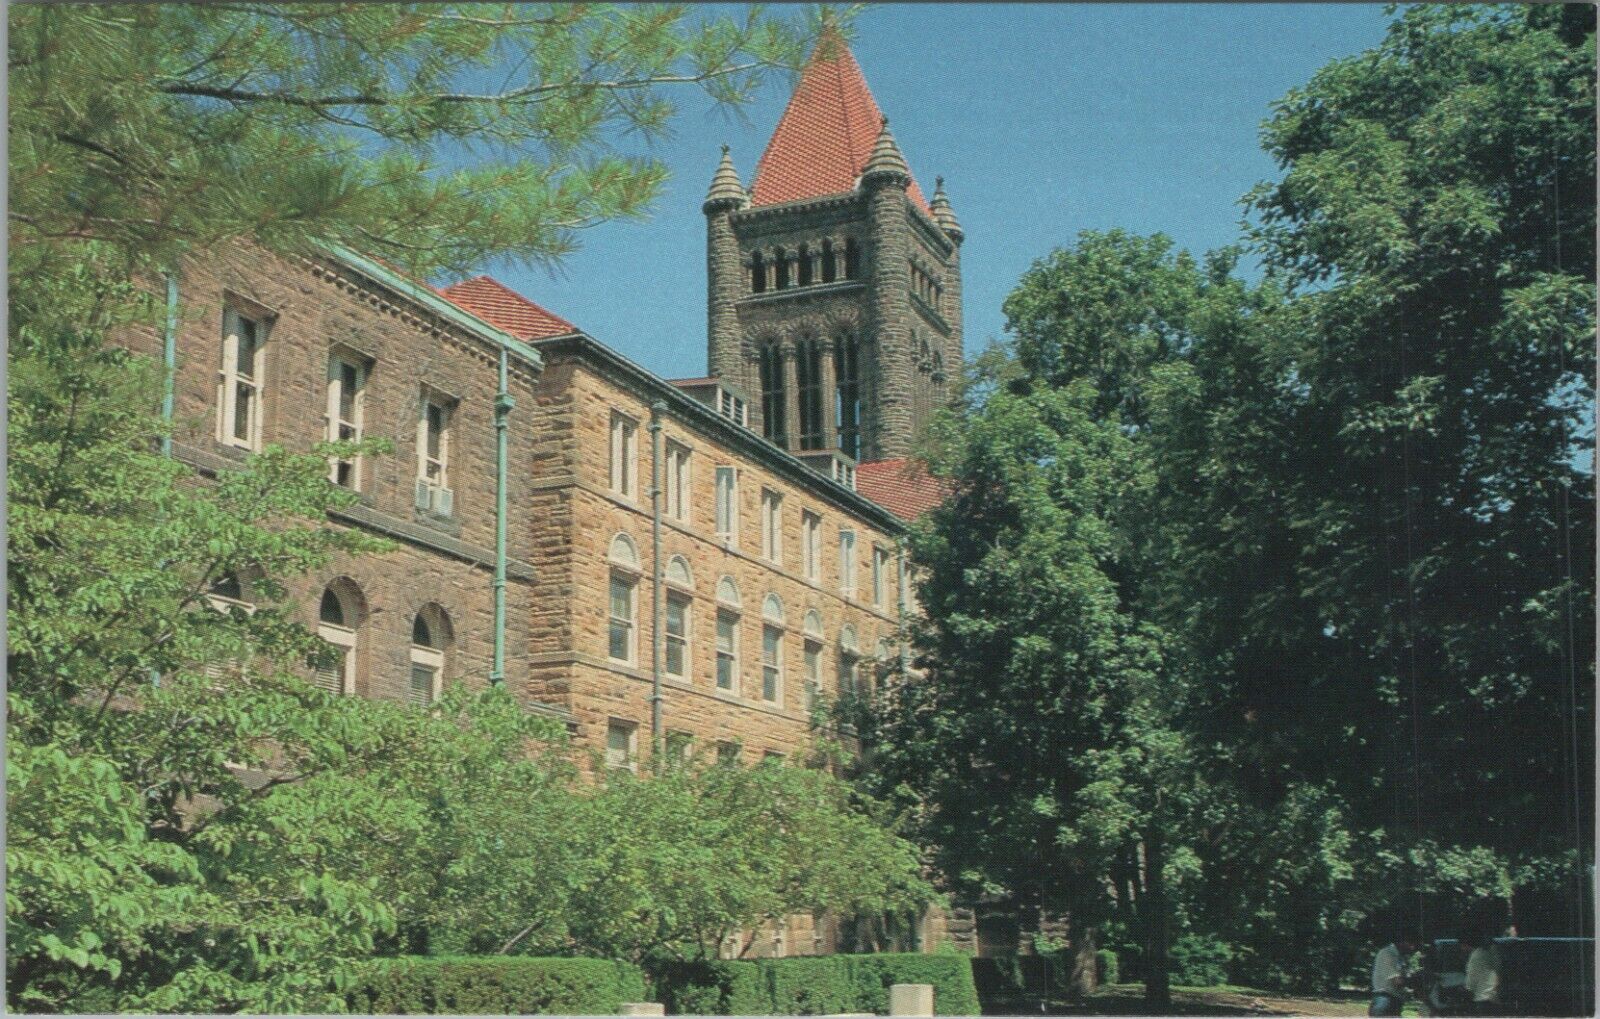 c1950-1960 Altgeld Hall University of Illinois Urbana Illinois postcard C314